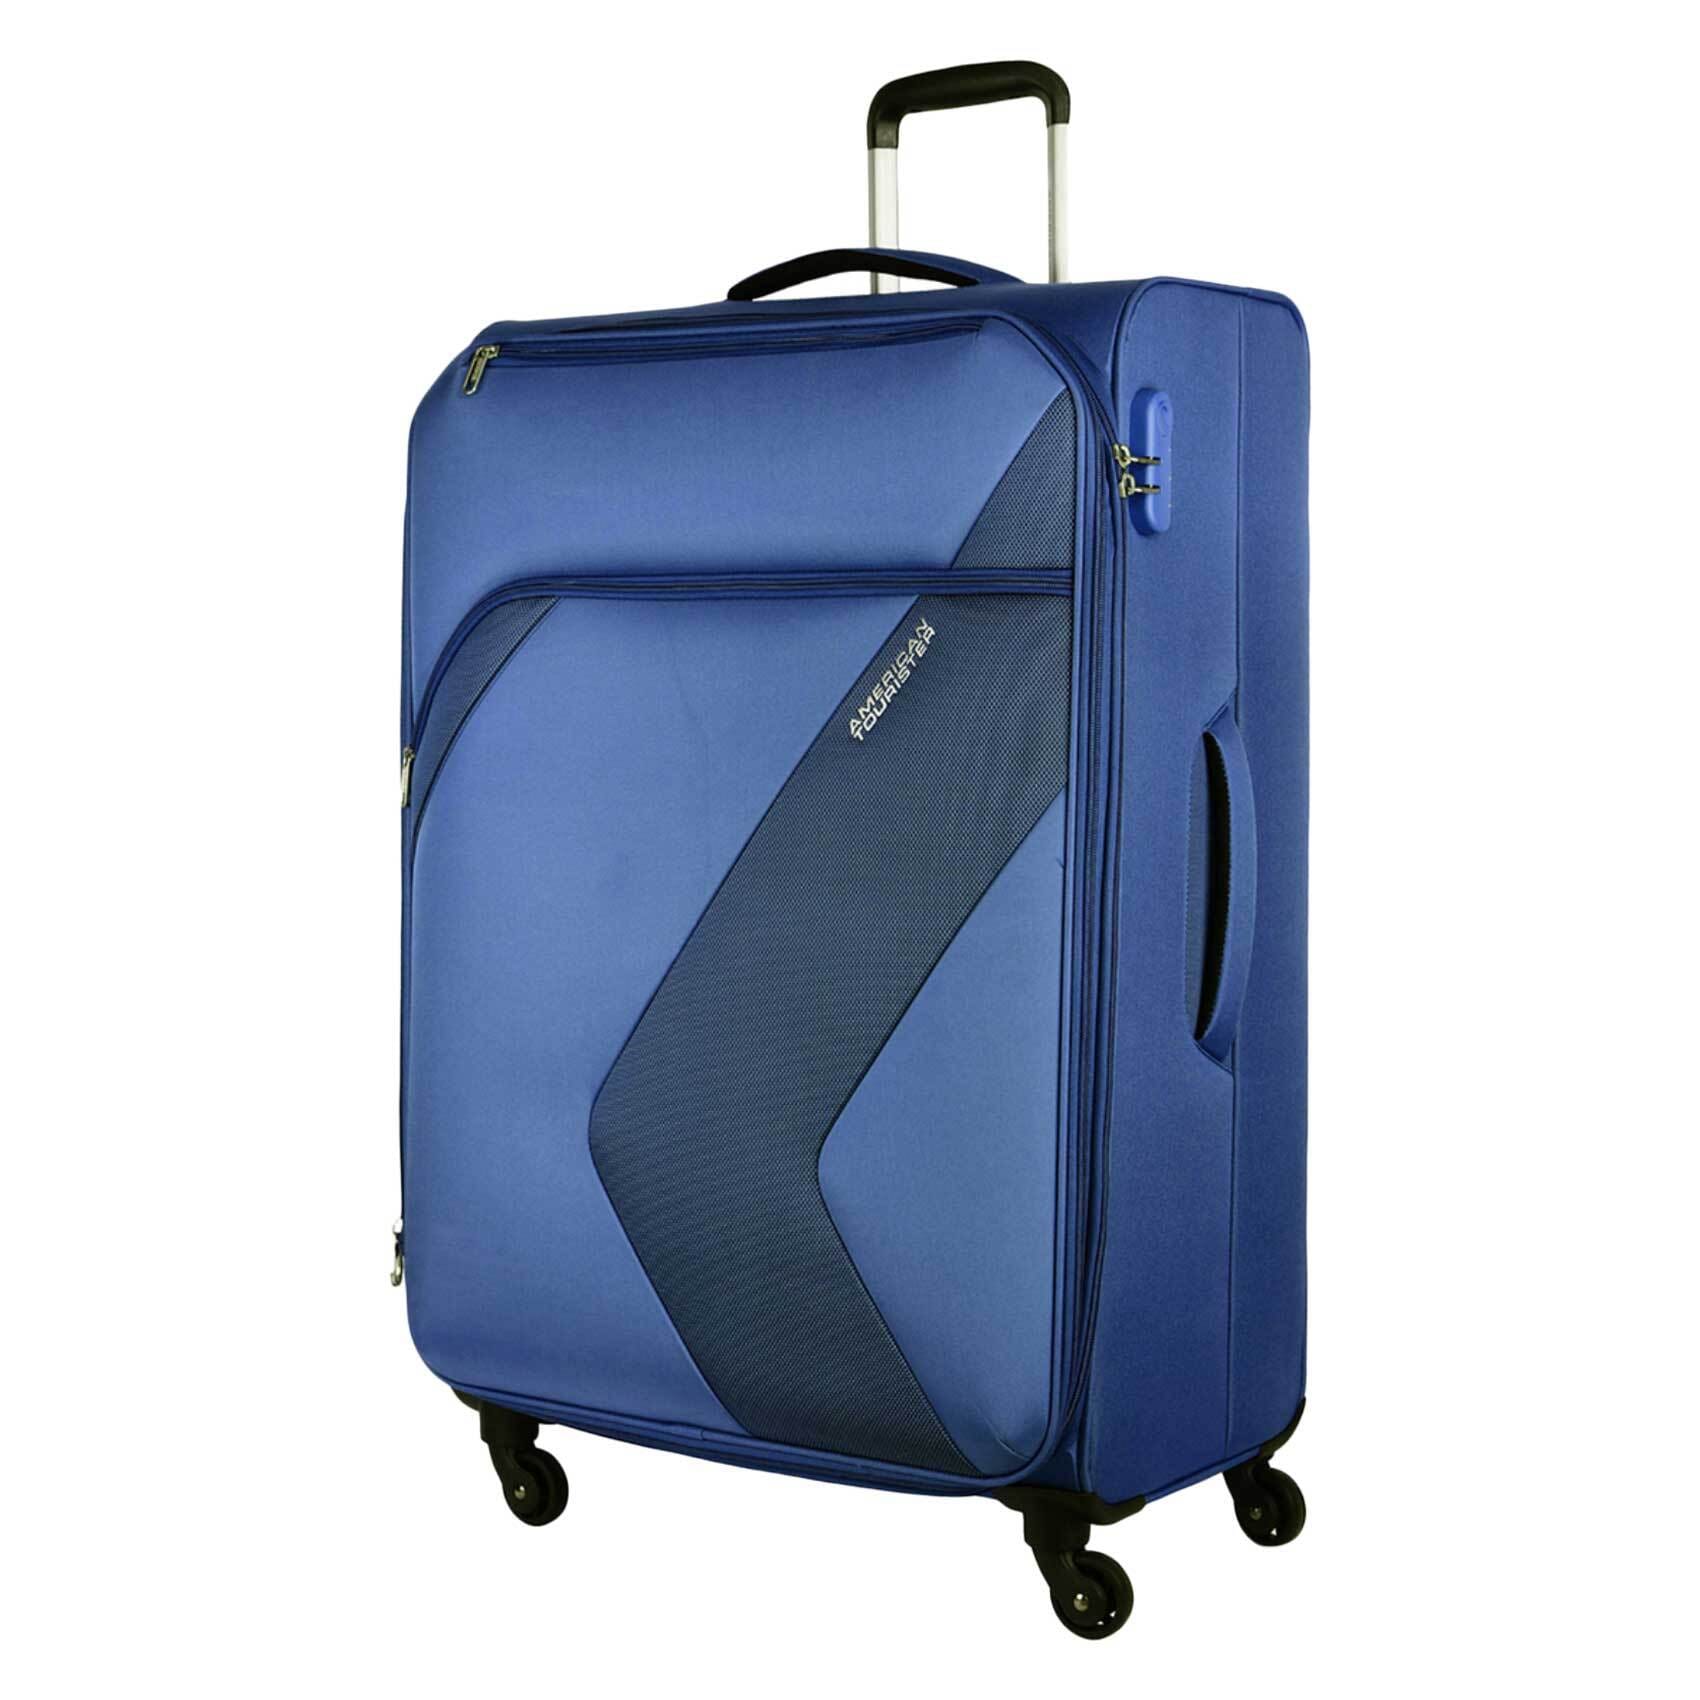 Verage Houston Hardside Anti-Bacterial Luggage 28 Large